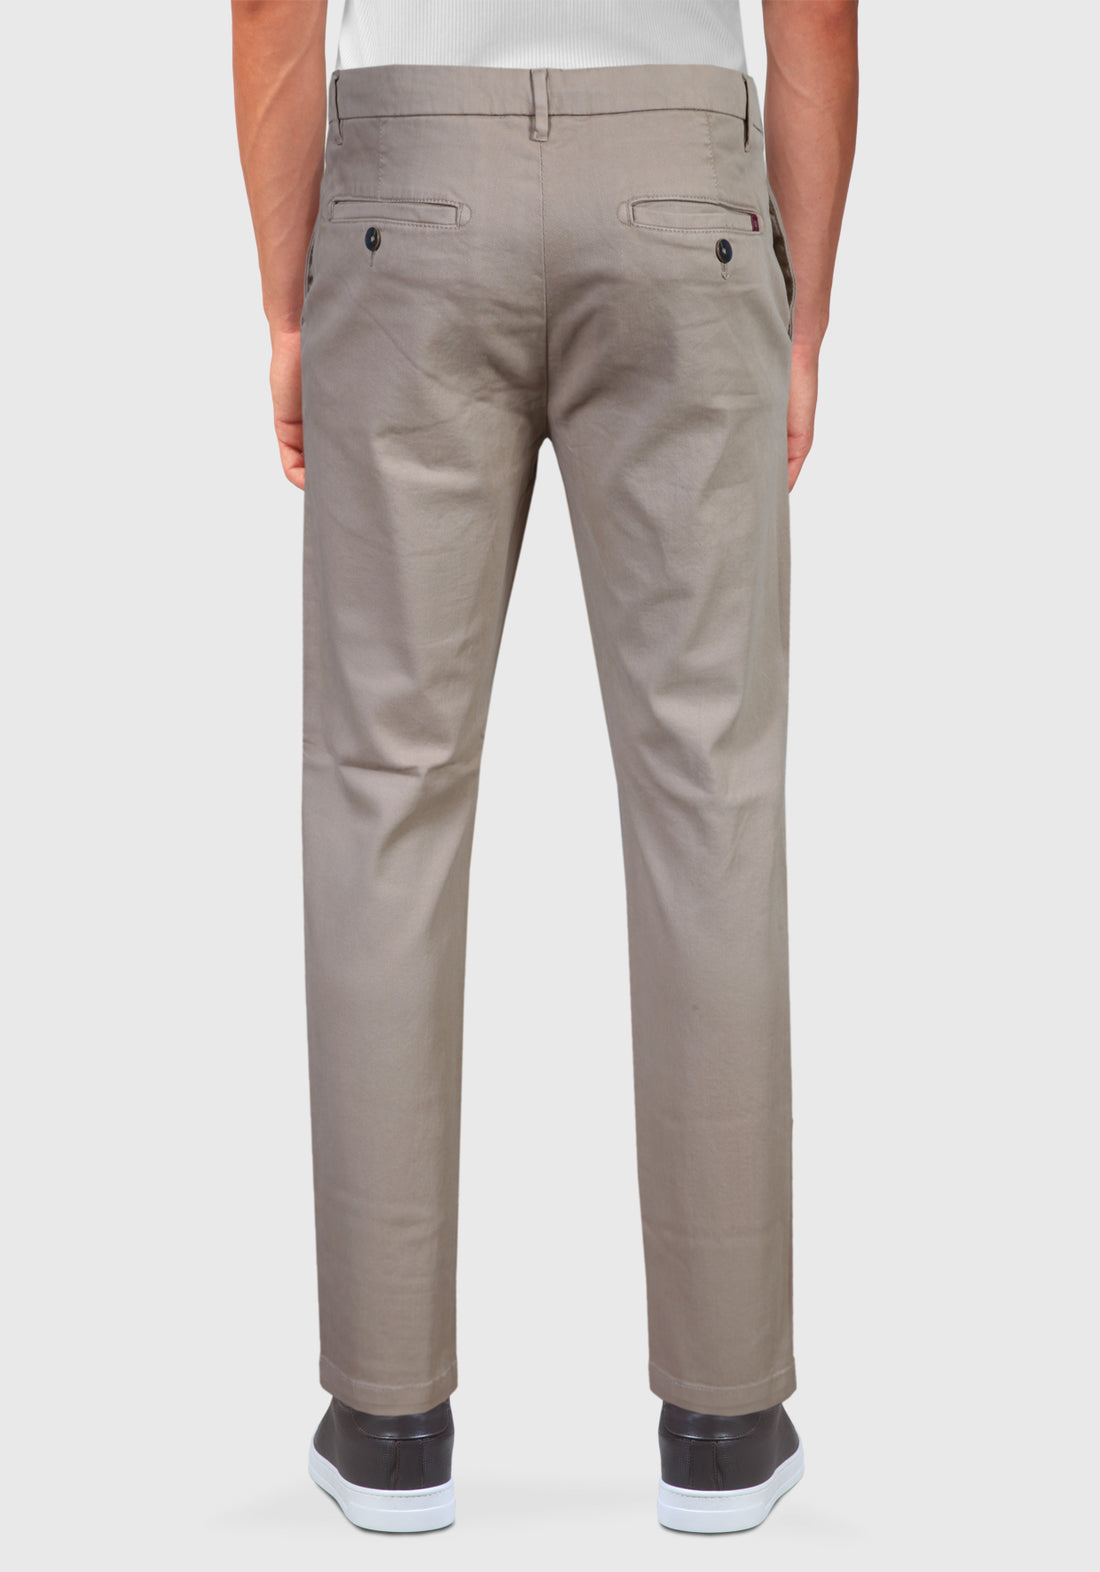 Pantalone Tasca America cotone Caldo Armaturato - Sabbia